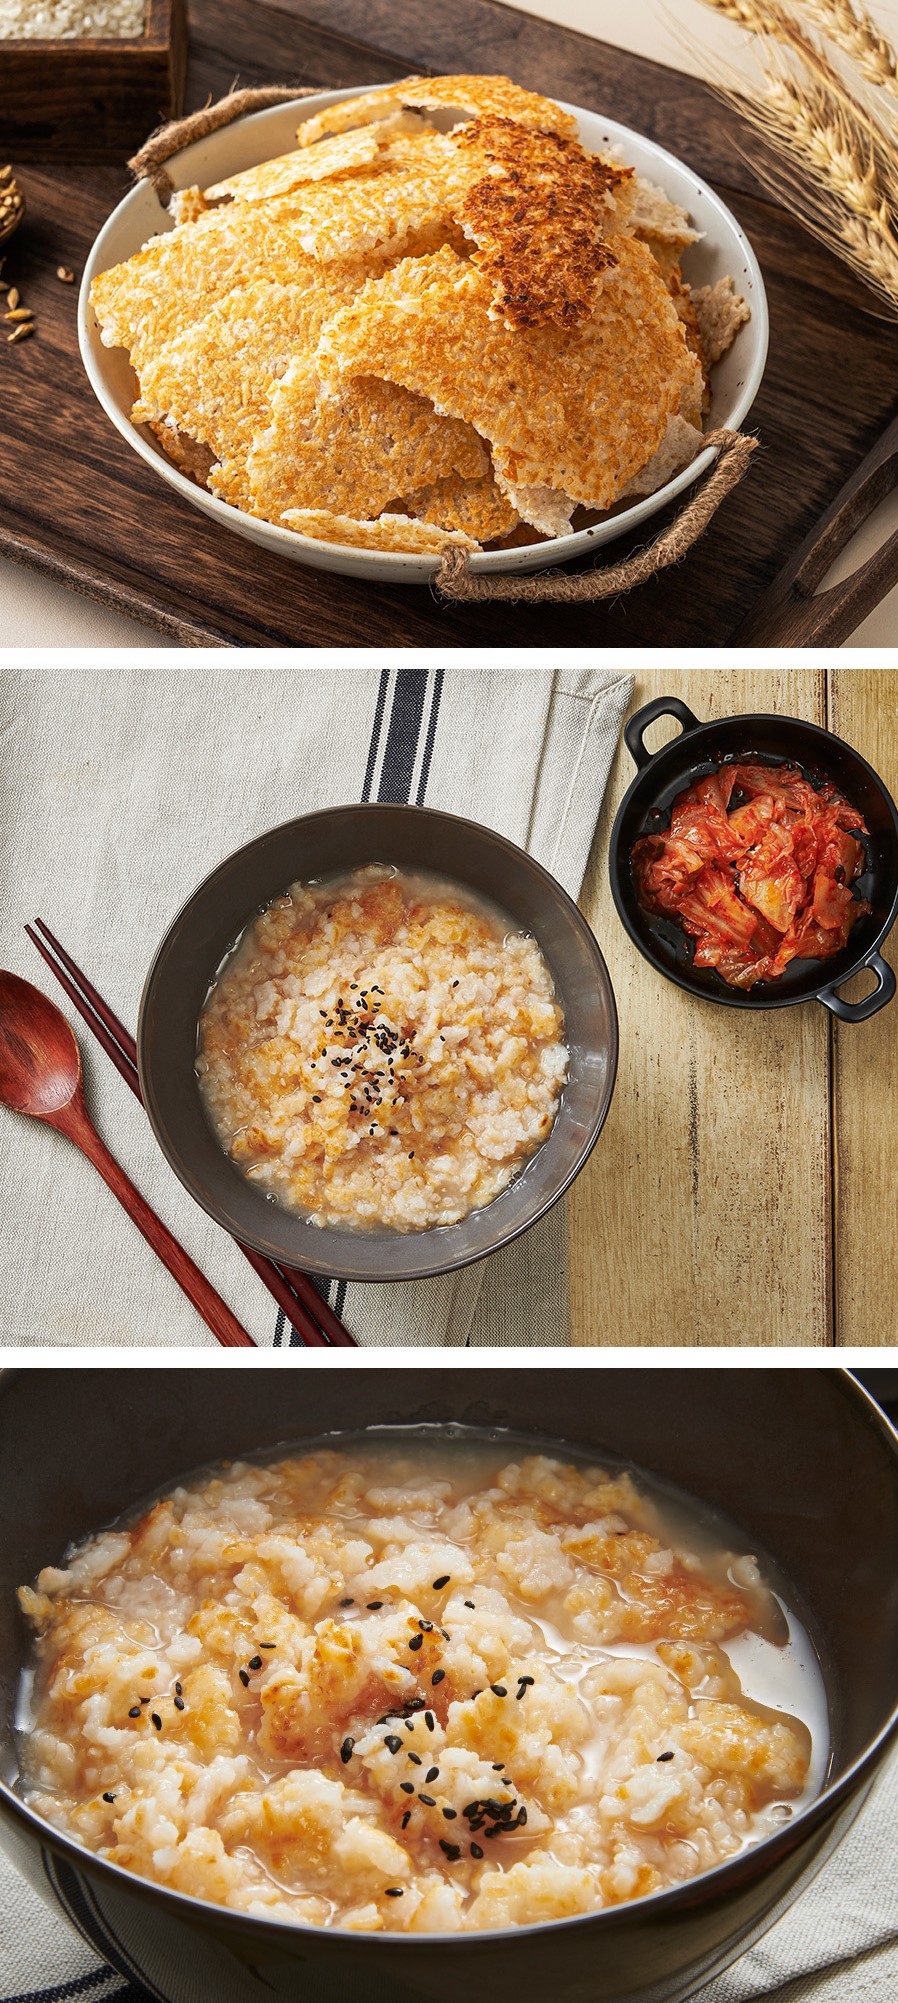 韓國食品-[사회적기업] 현미찹쌀 수제누룽지 400g